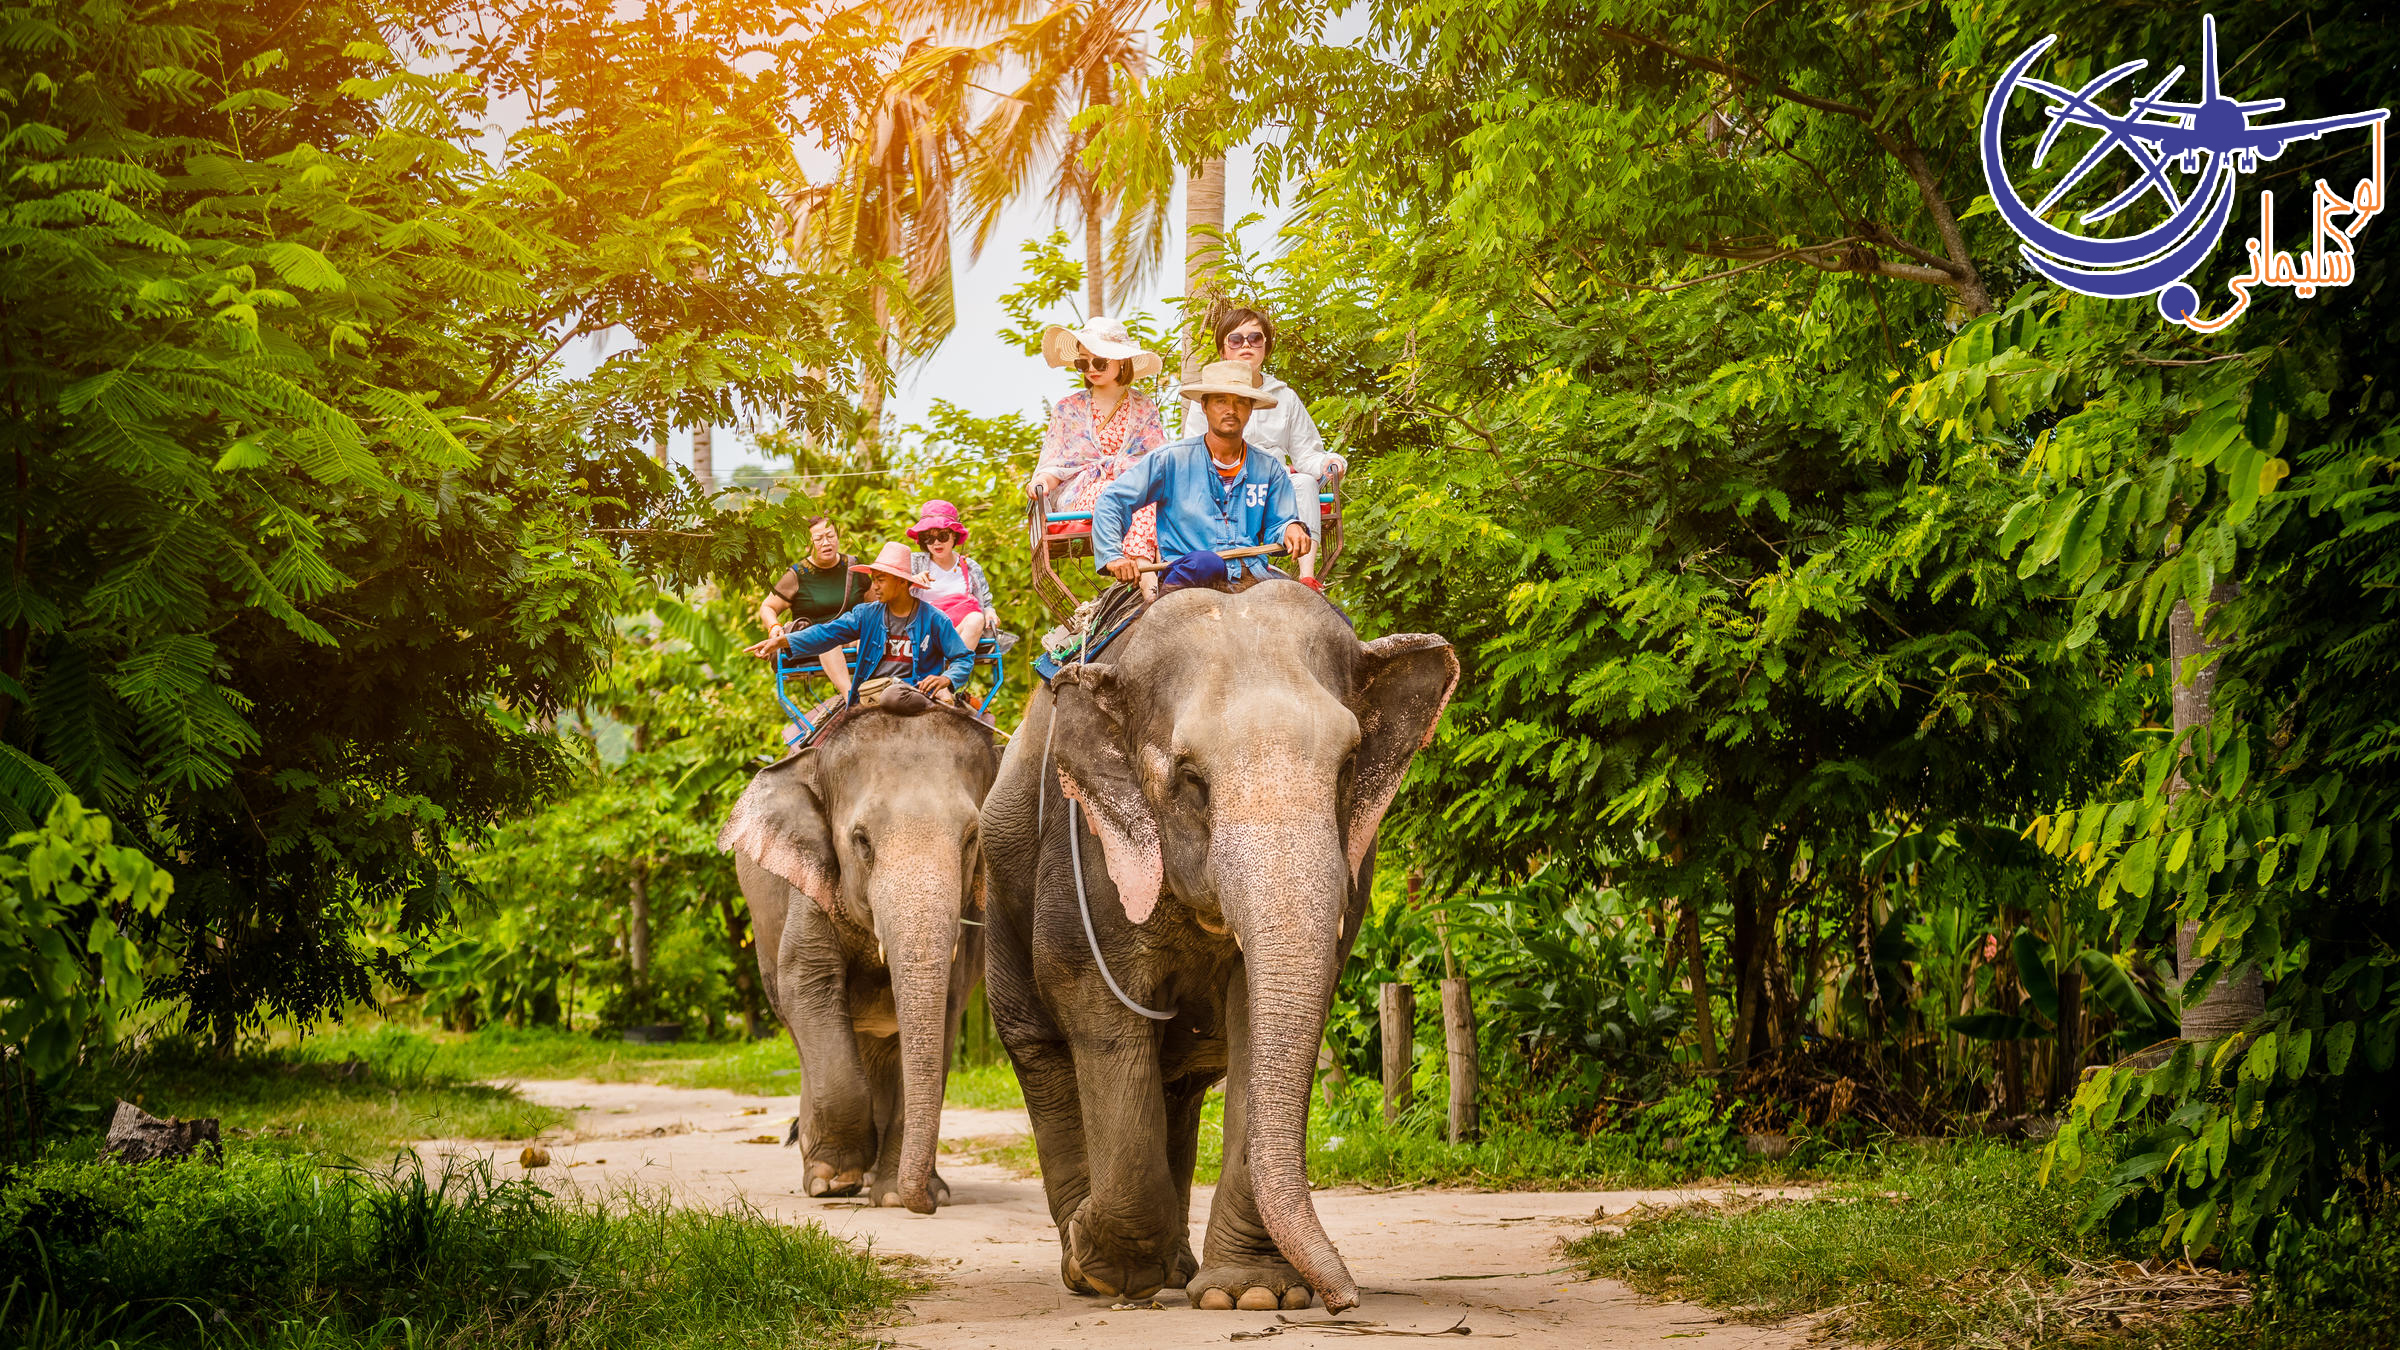 جنگل فیل های پاتایا/Pattaya Elephant Jungle Sanctuary 